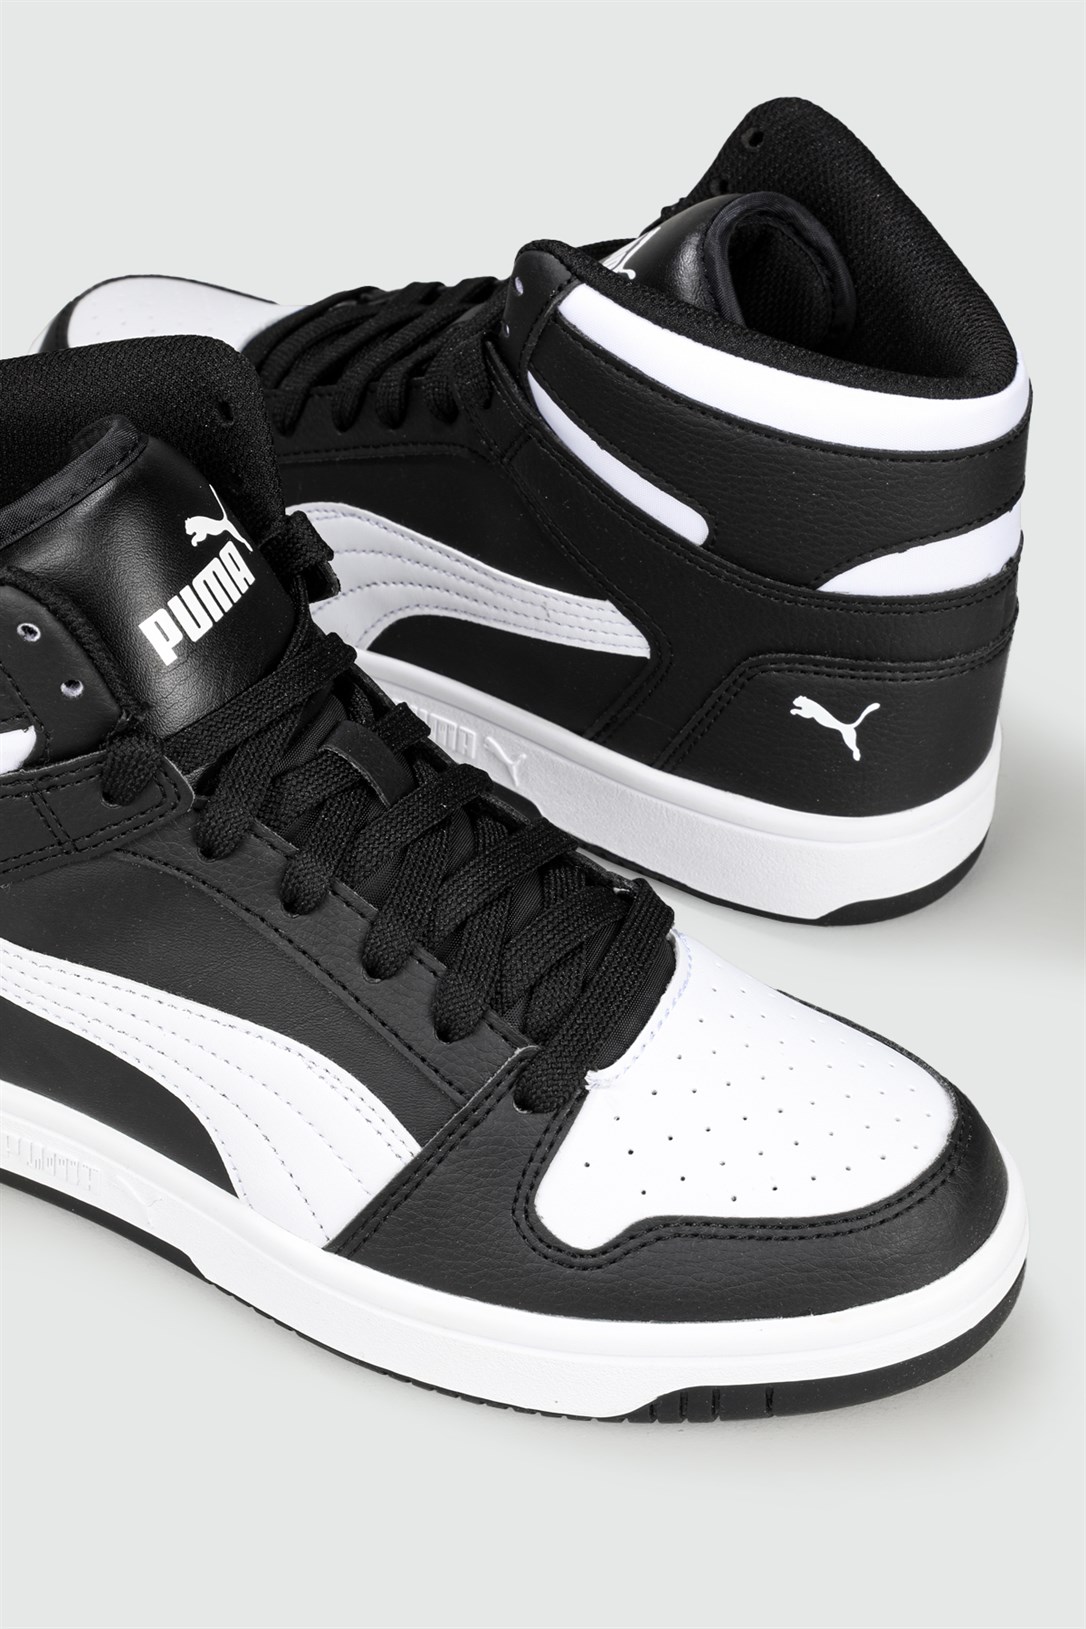 Puma Bilekten Boğazlı Basket Siyah Beyaz Erkek Spor Ayakkabı 369573-01